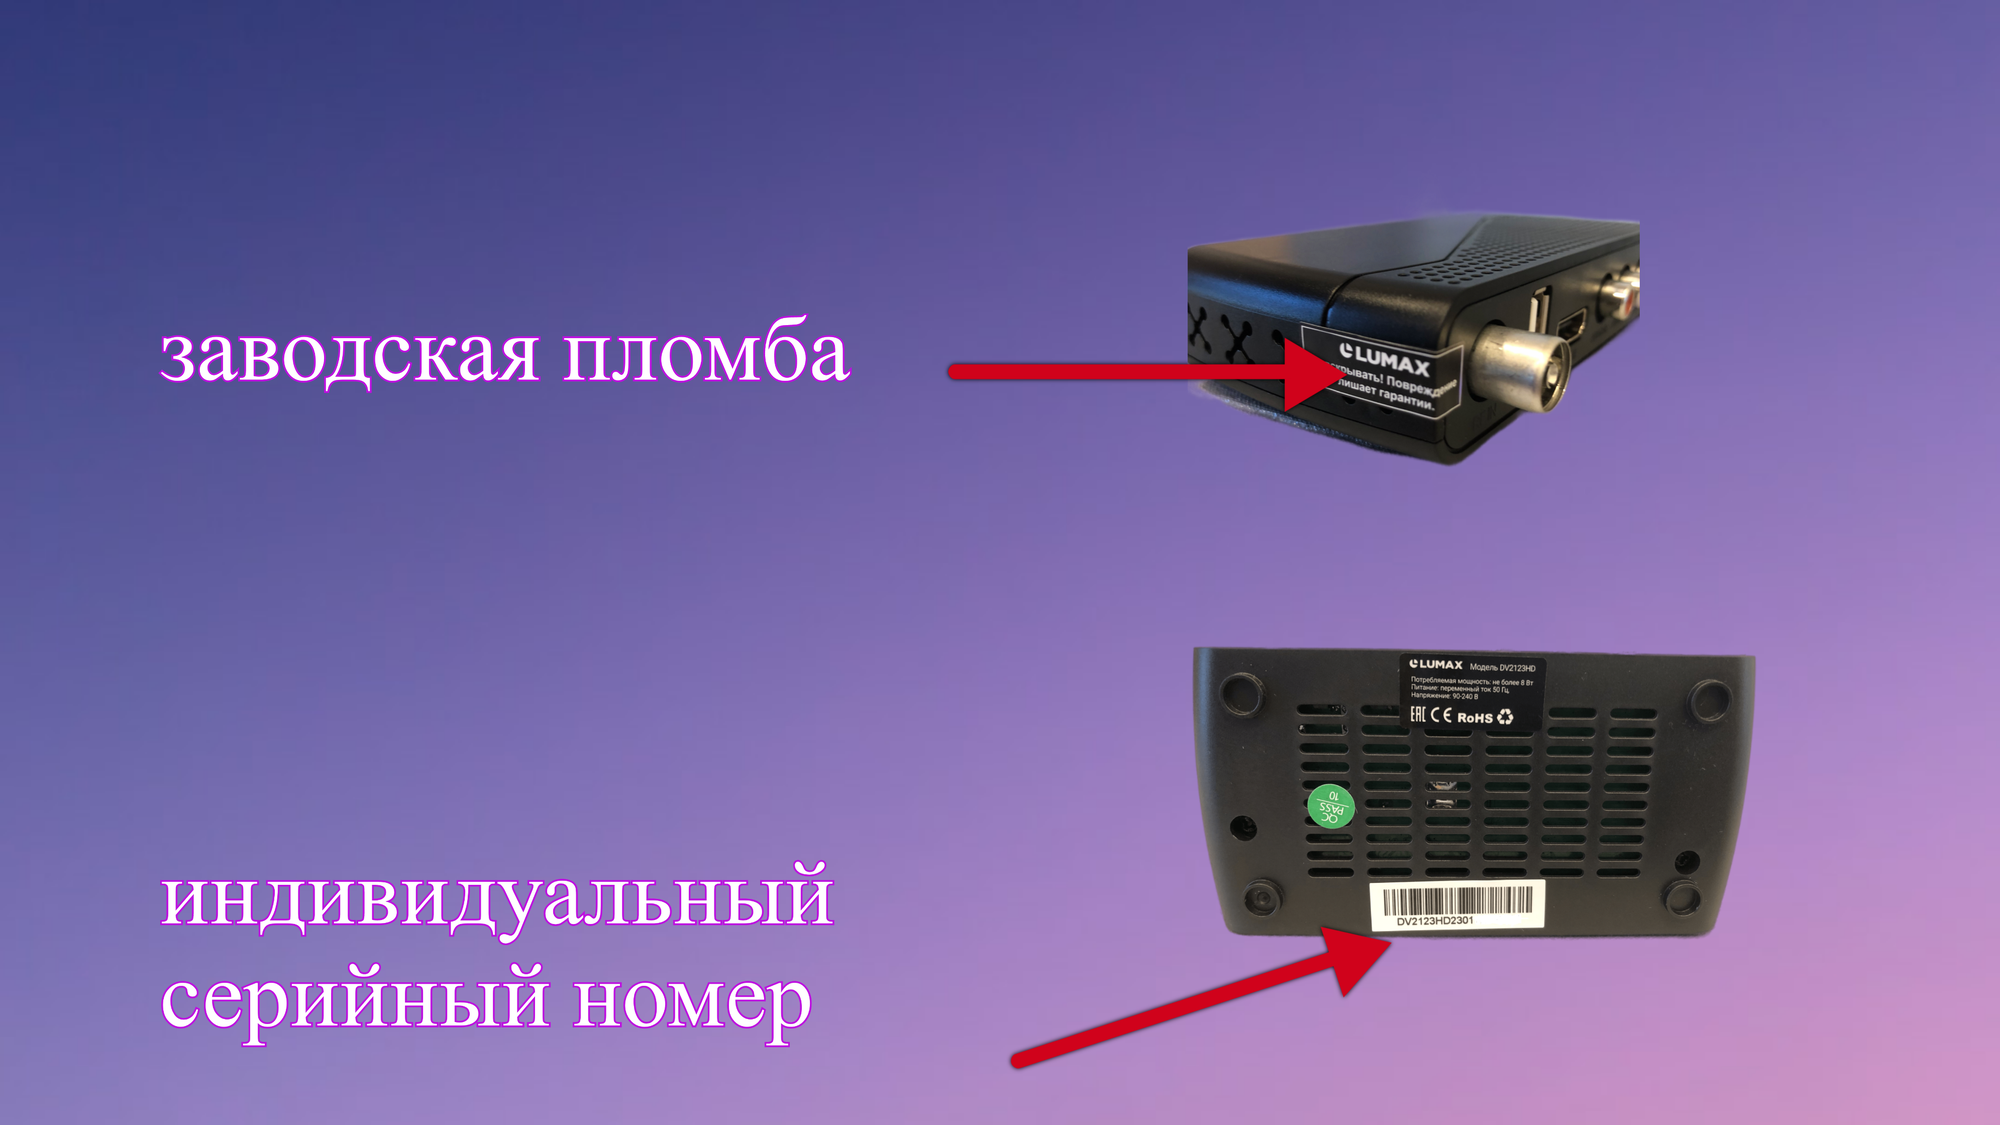 Приставка цифровая LUMAX DV2123HD Эфирный ТВ приемник TV-тюнер